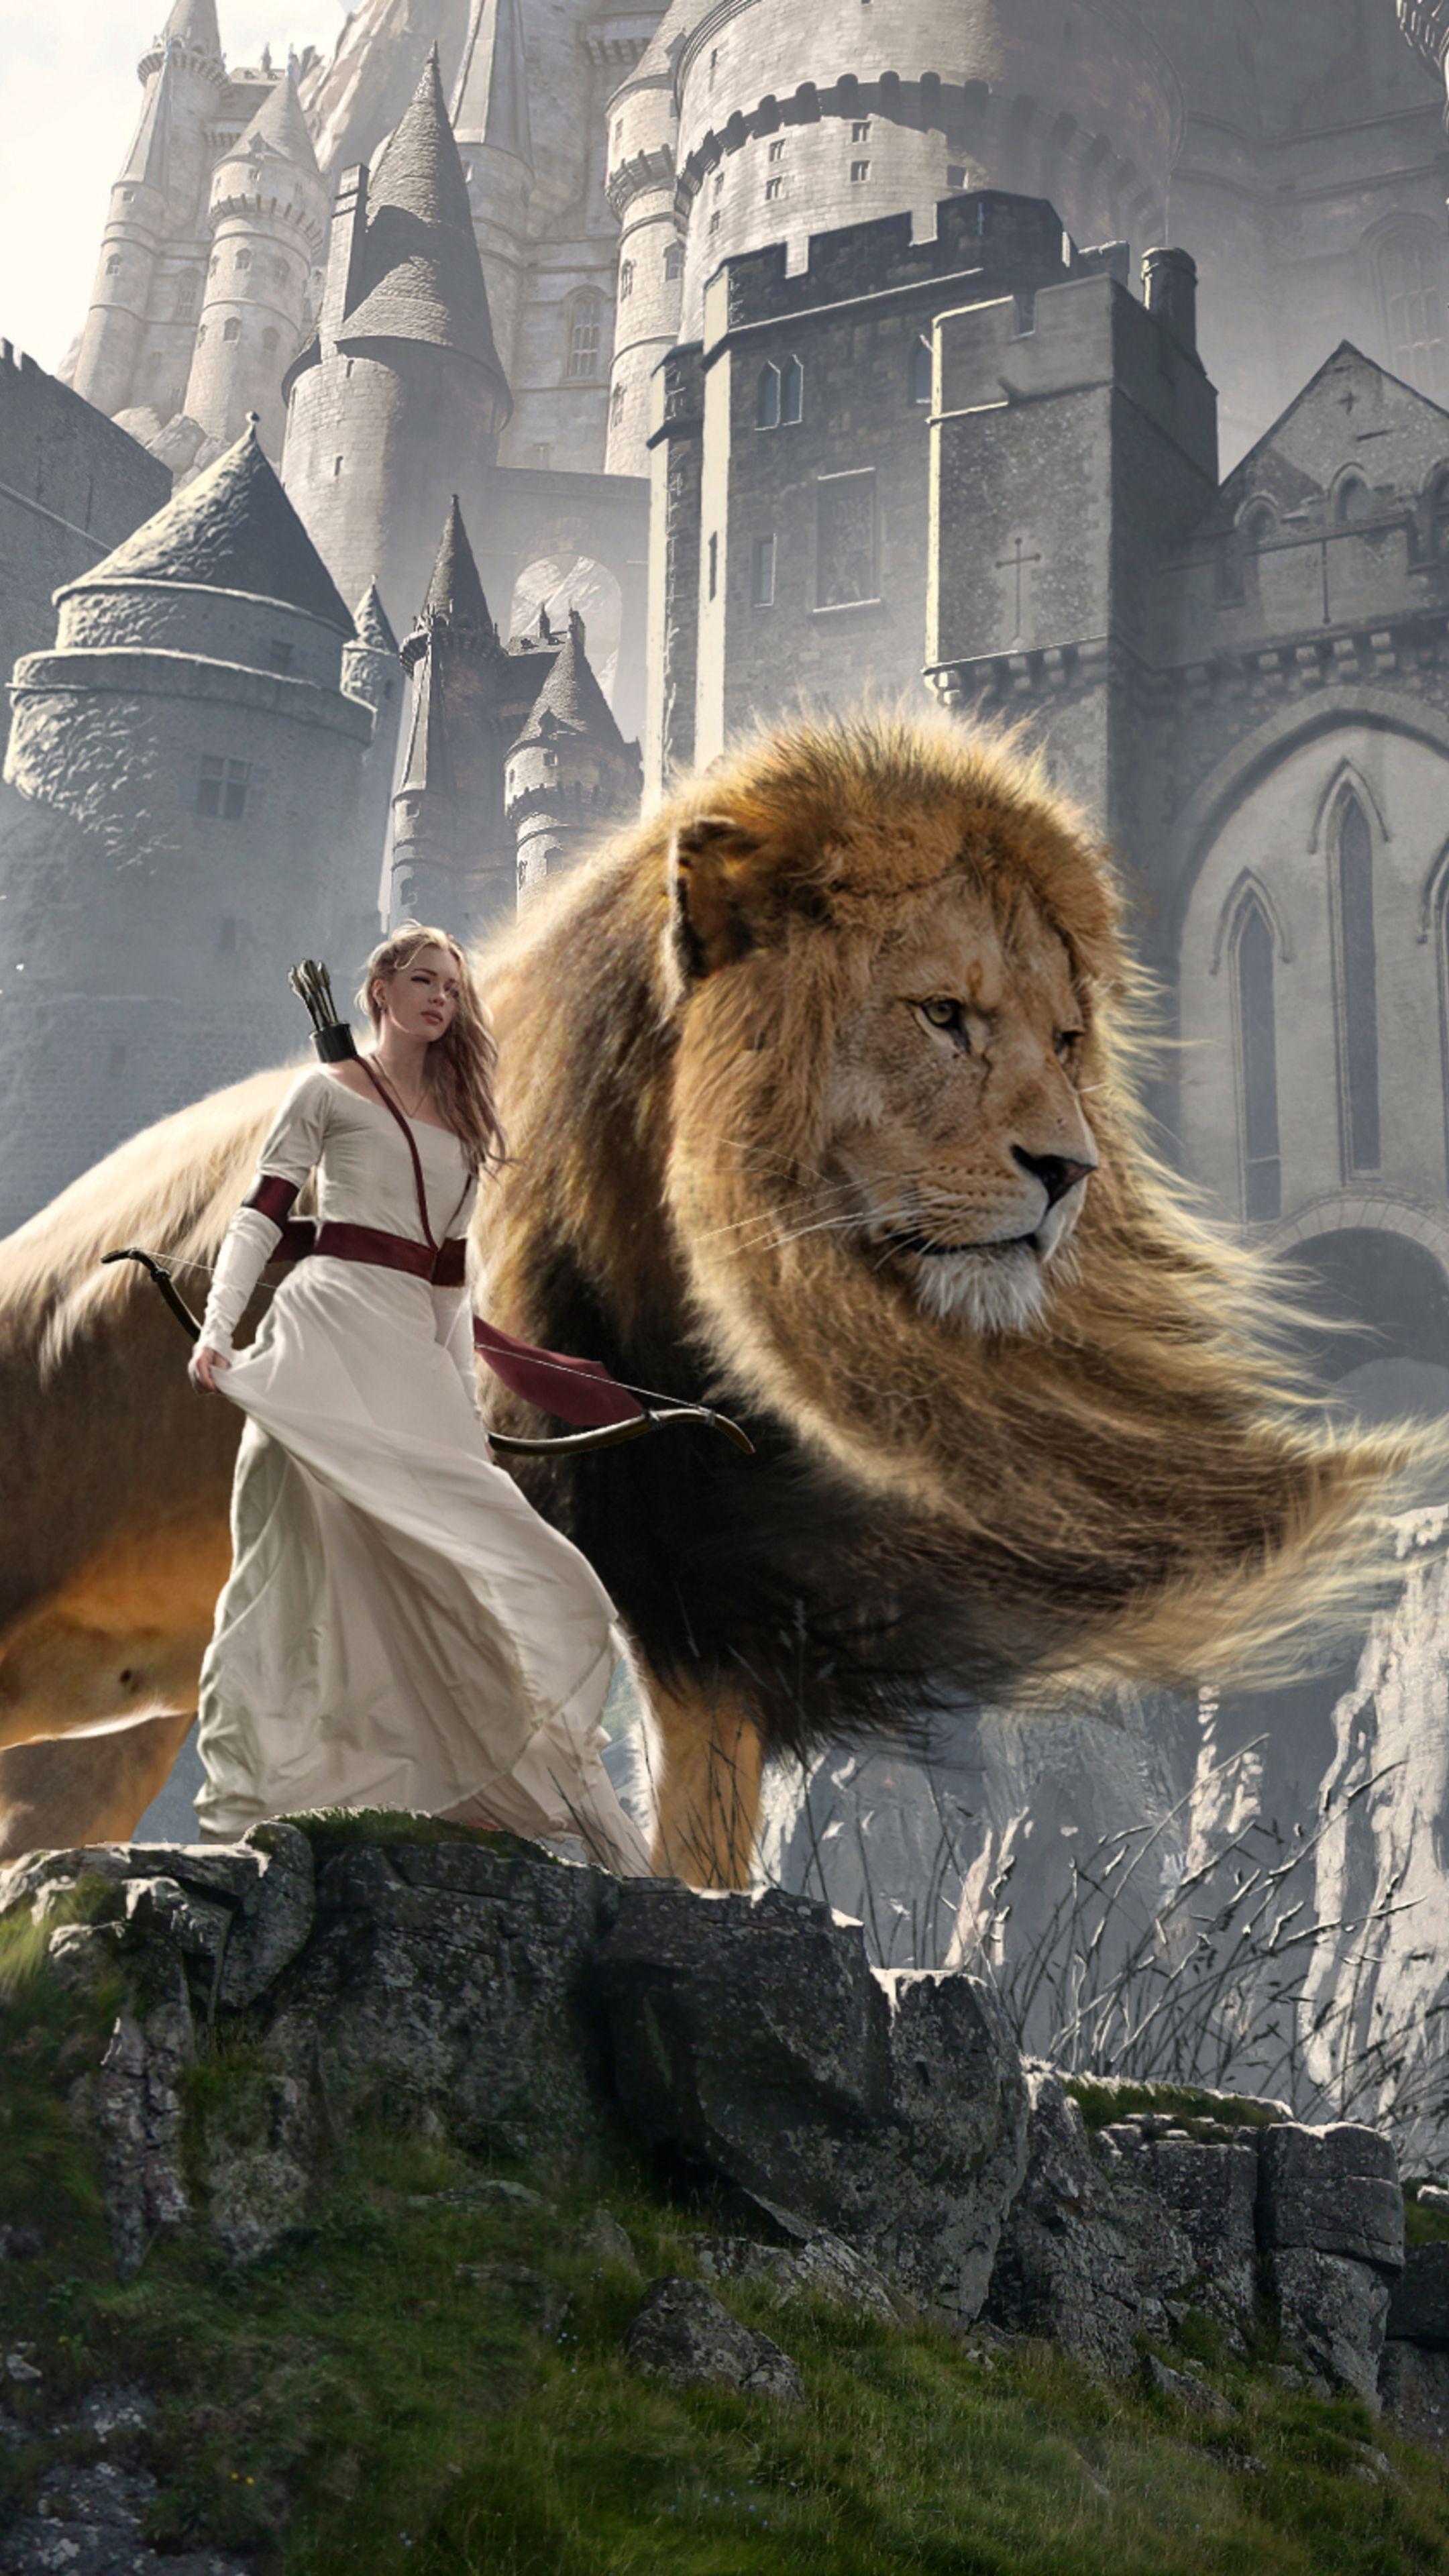 Hình nền Phim Biên niên sử Narnia - Top Hình Ảnh Đẹp